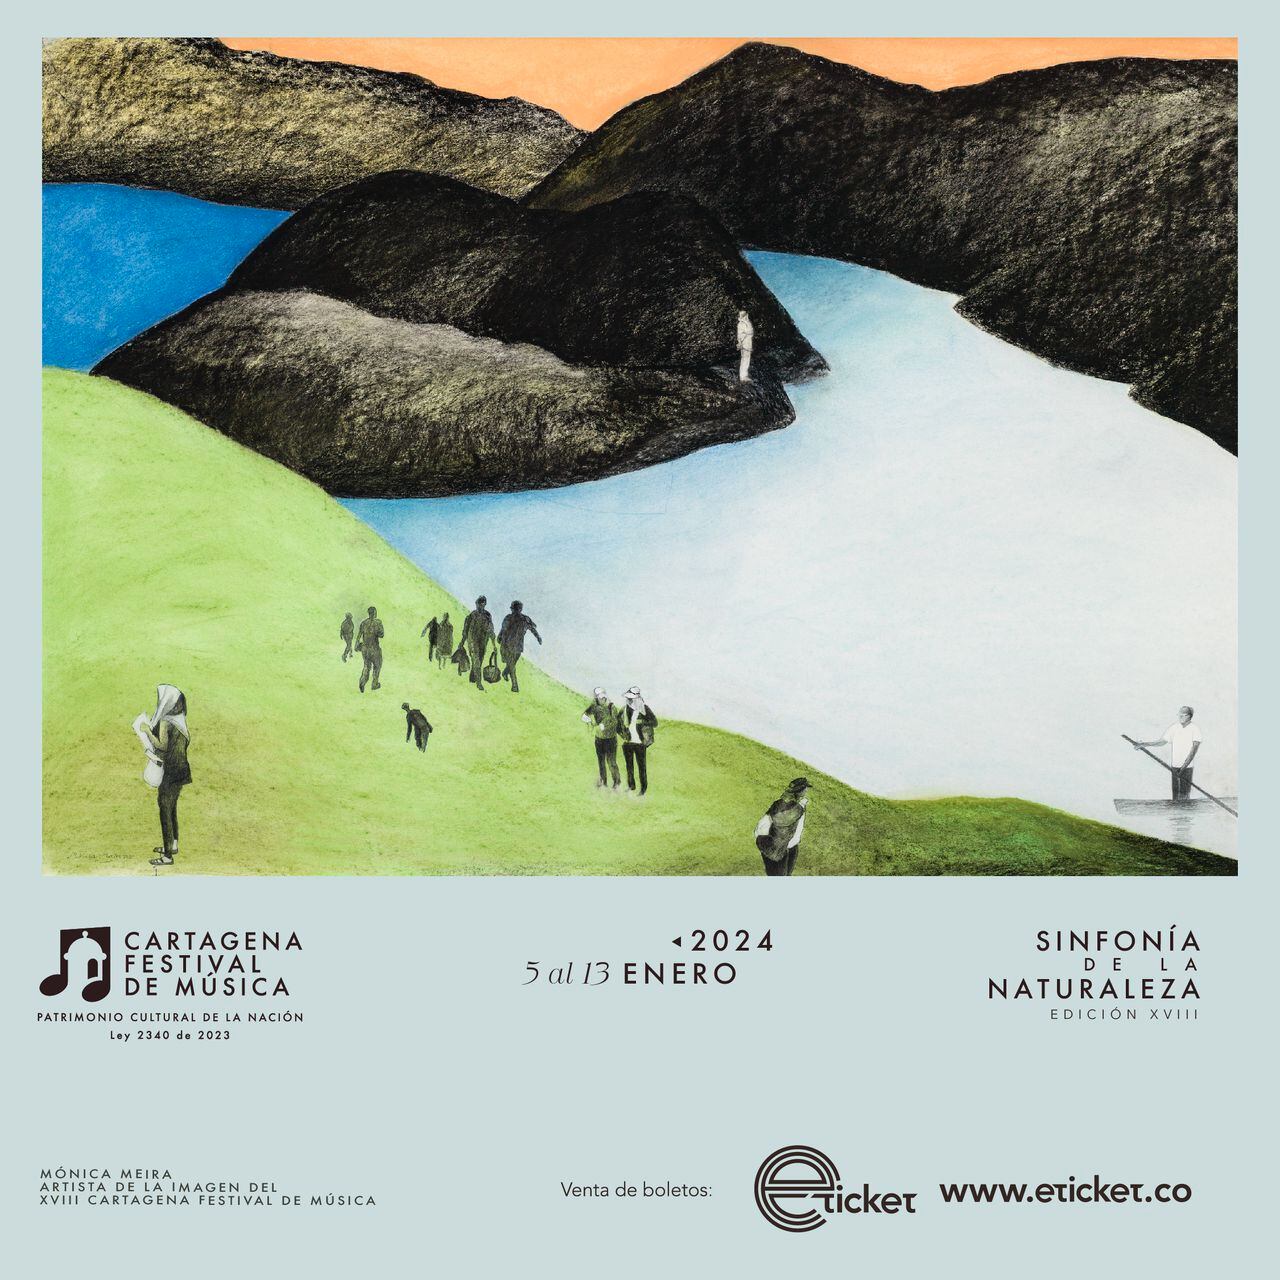 La edición número 18 del Cartagena Festival de Música arranca este viernes, contando con 24 conciertos y más de 150 artistas invitados.